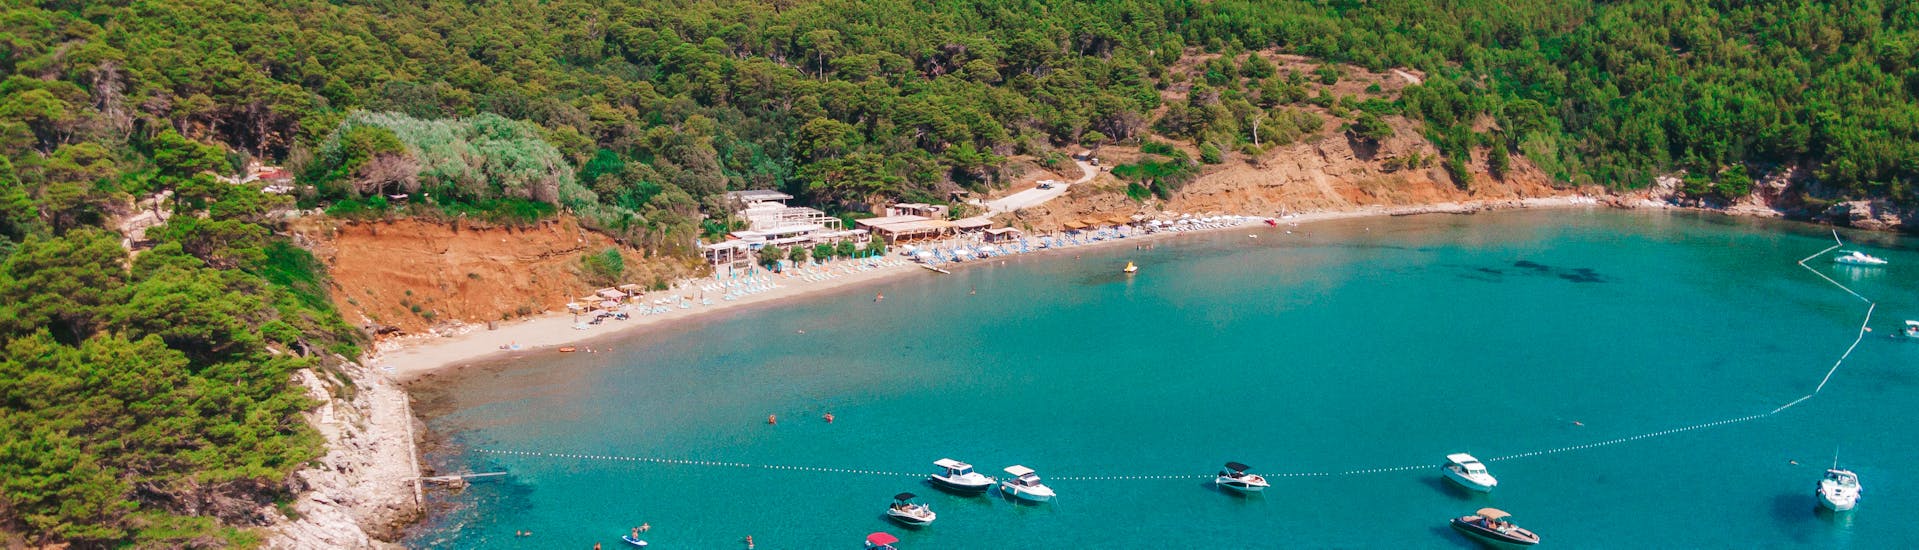 Gita privata in barca da Dubrovnik a Isole Elafiti con bagno in mare e osservazione della fauna selvatica.